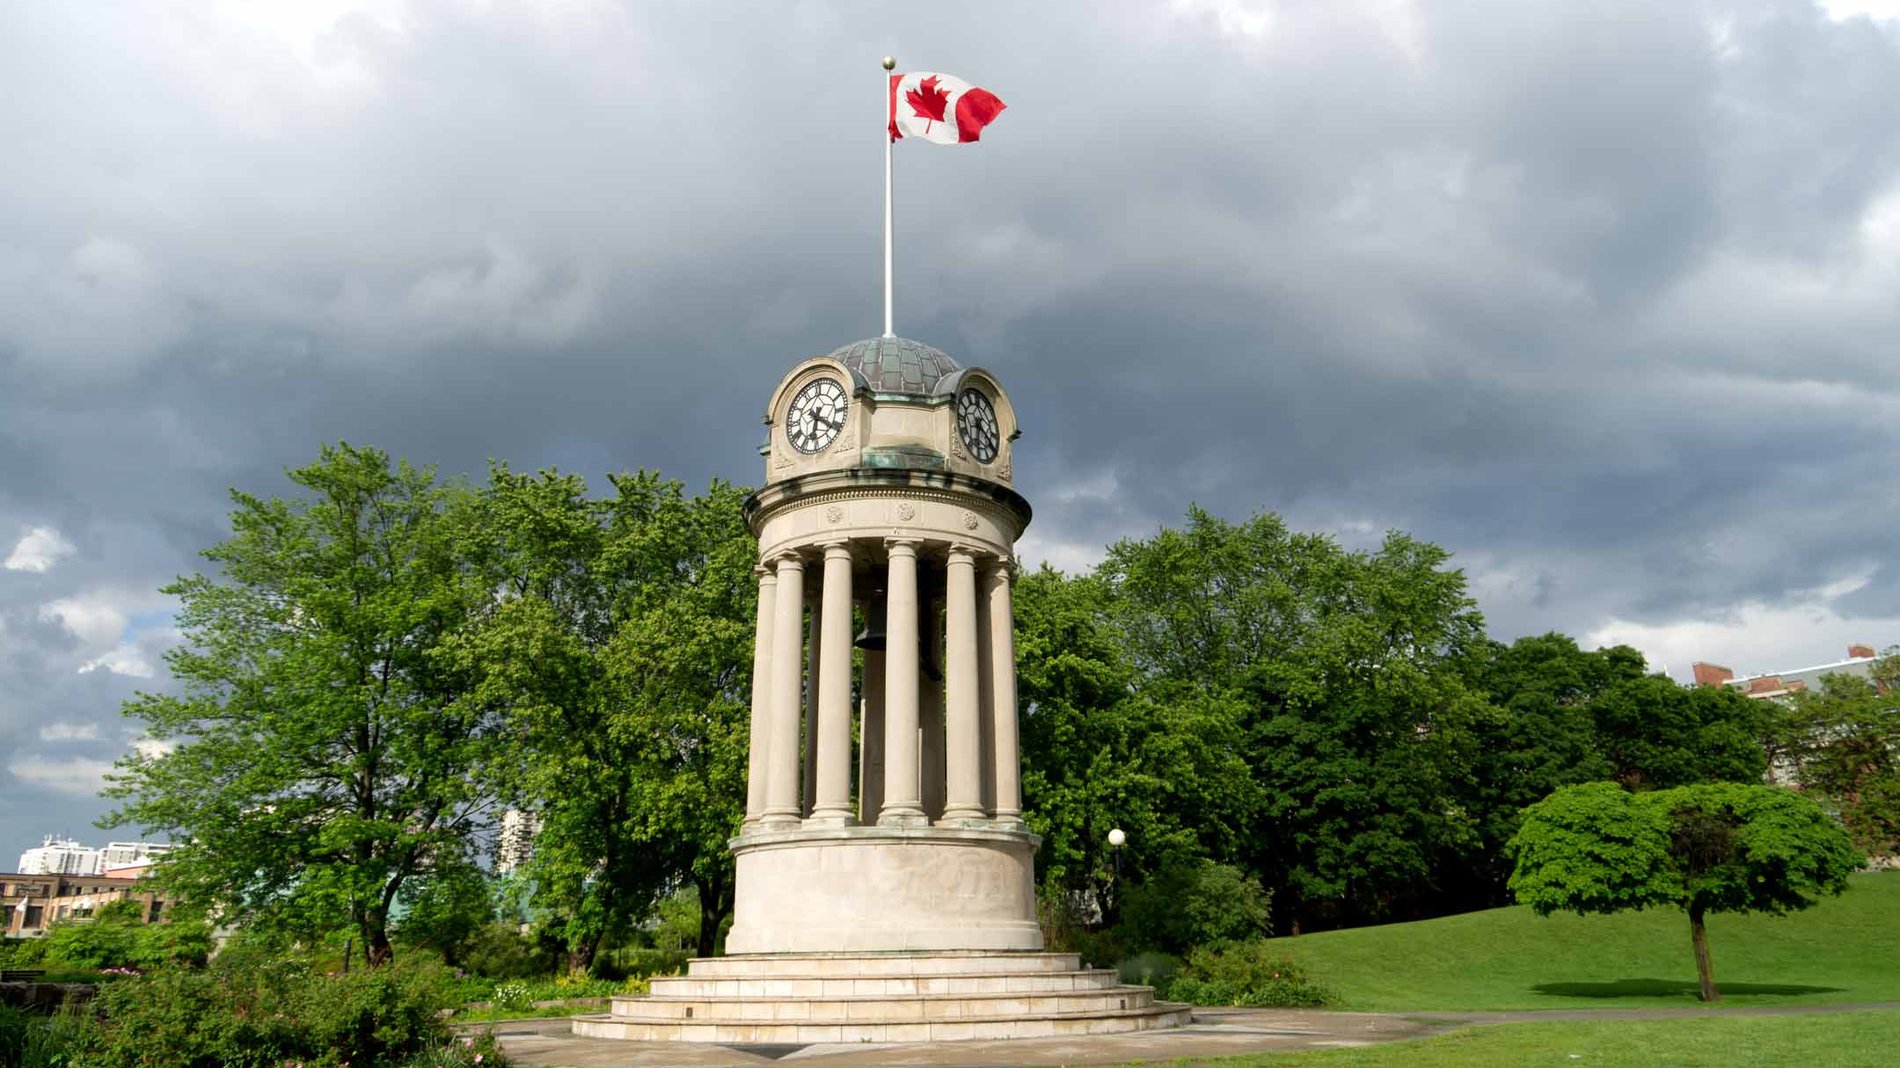 Drapeau canadien flottant au sommet de la tour de l’Horloge du parc Victoria, à Kitchener